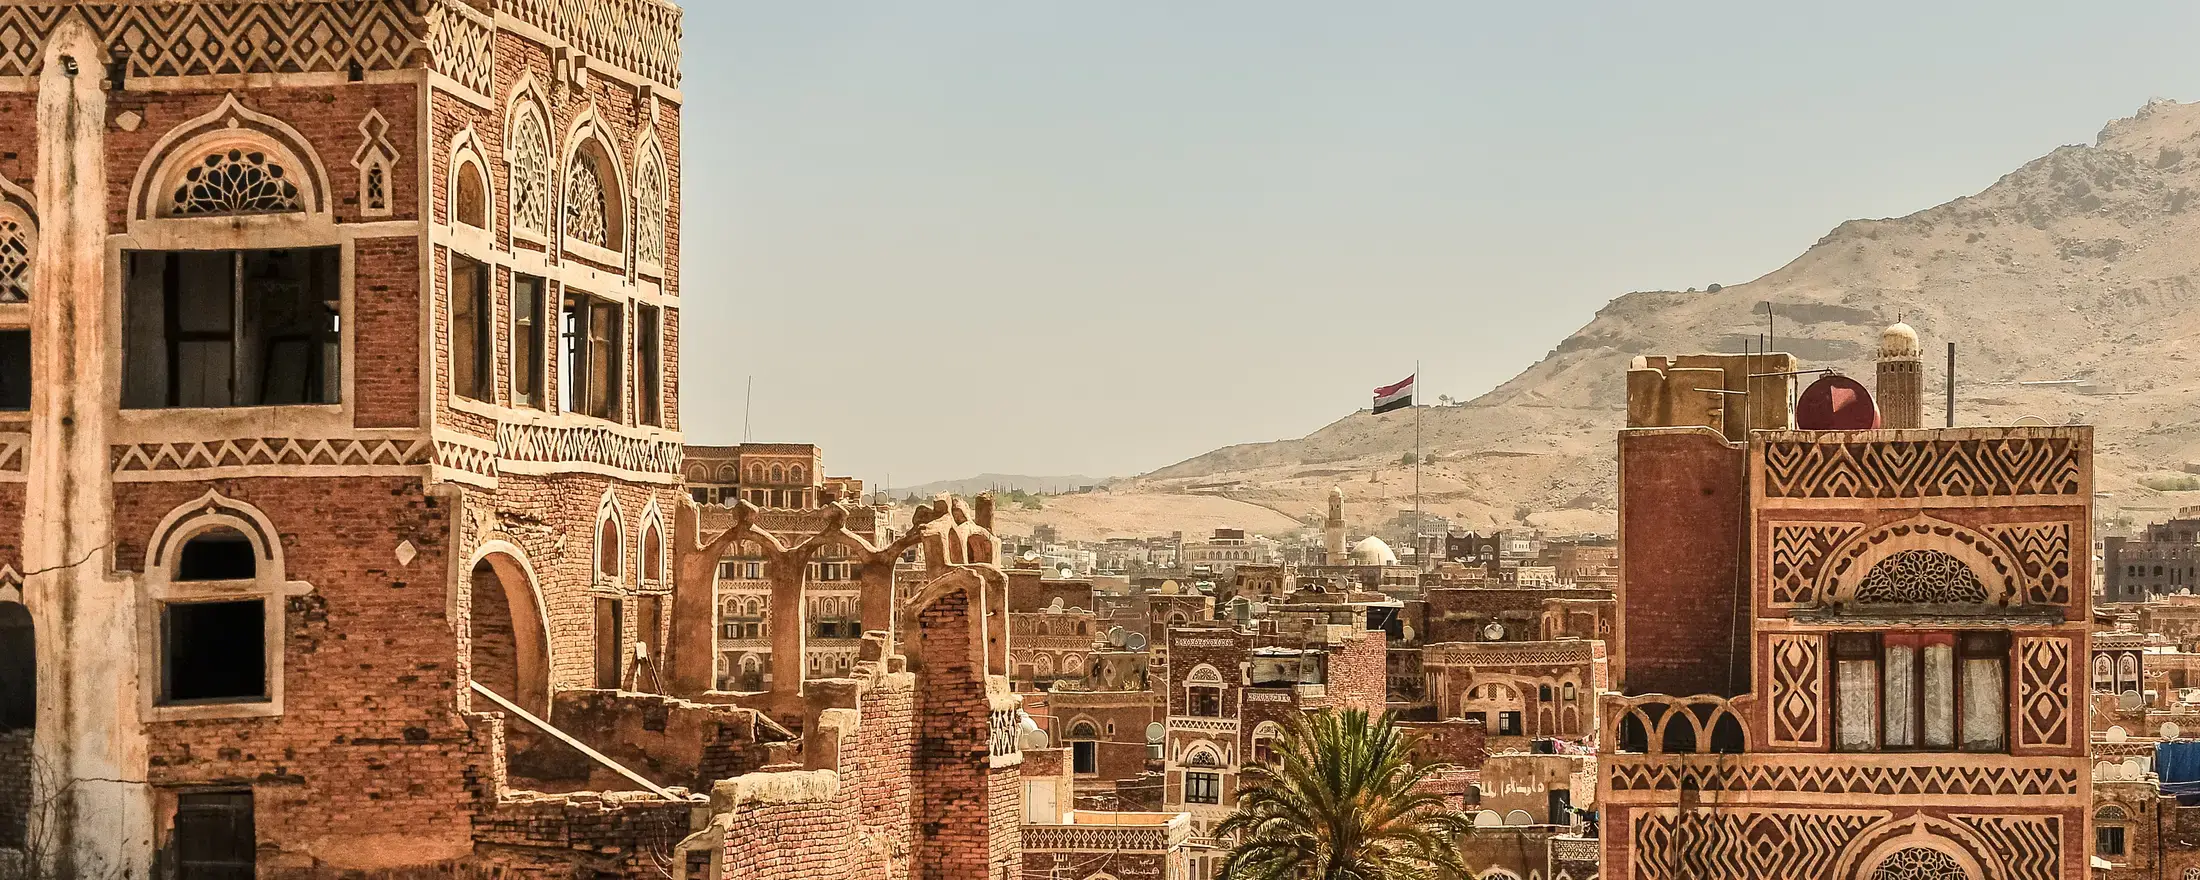 Architecture in Yemen